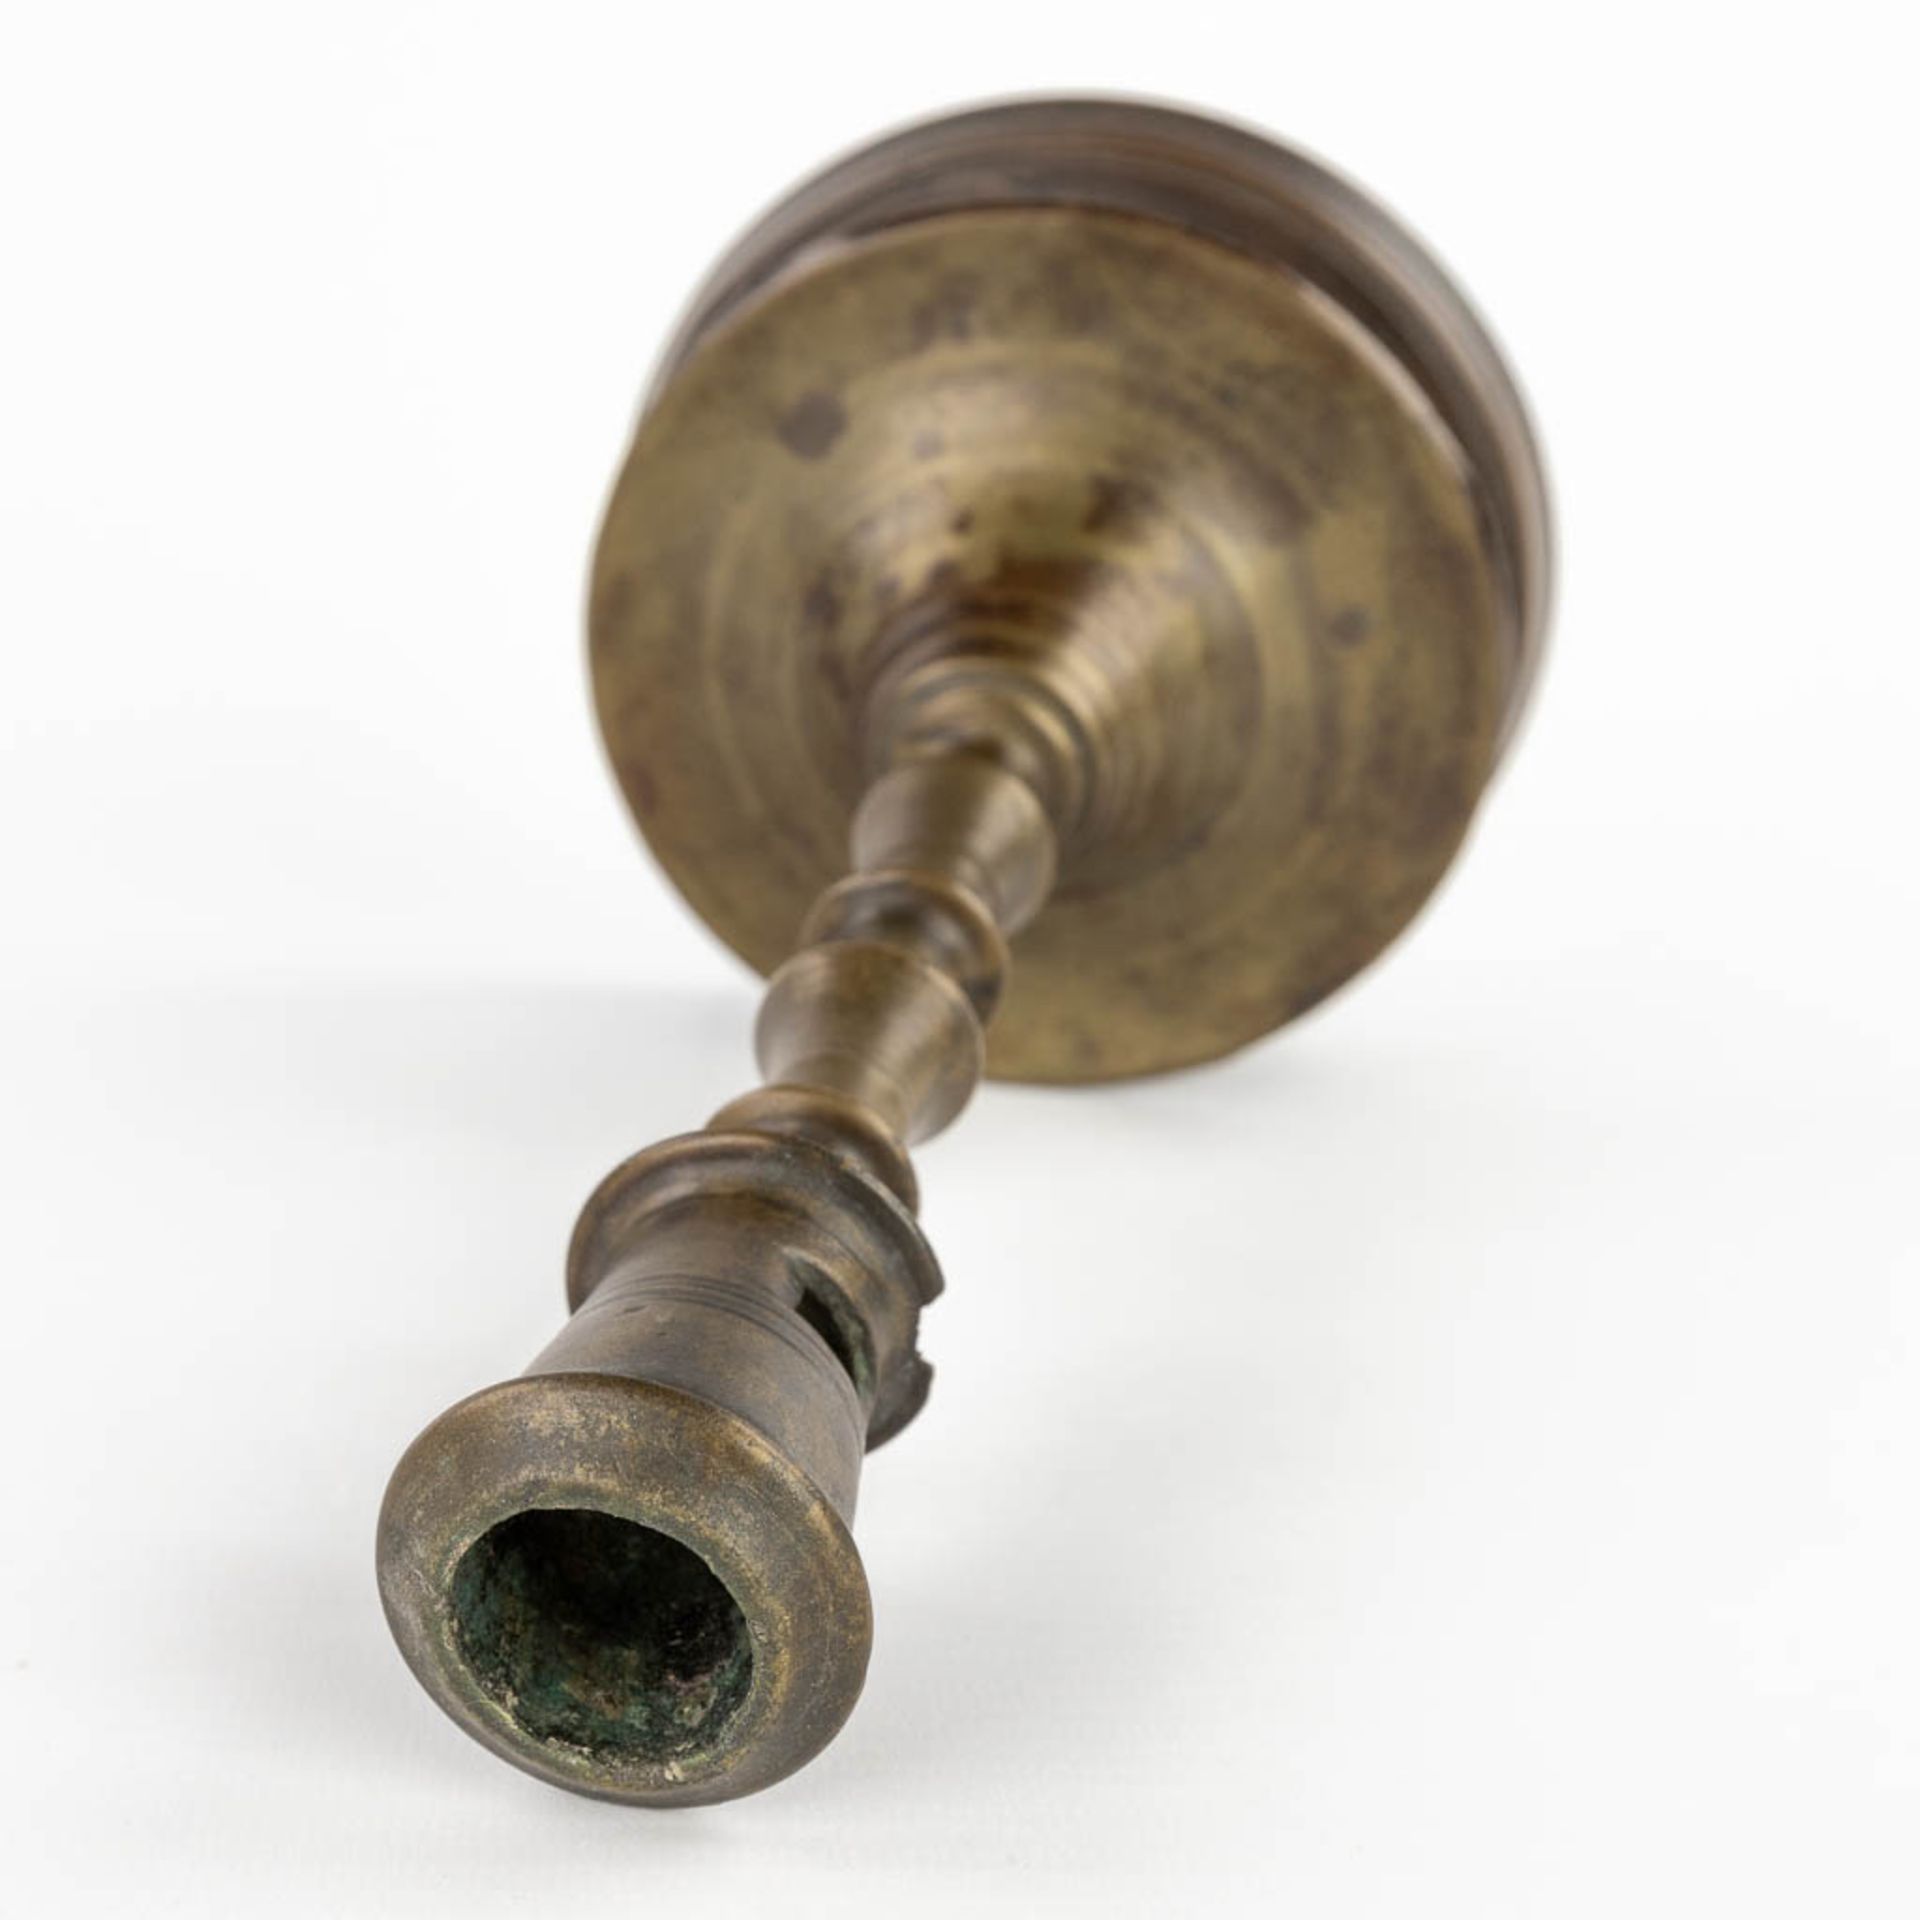 An antique Flemish or Dutch Button candlestick, bronze, 17th C (H:25 x D:13,3 cm) - Image 7 of 9